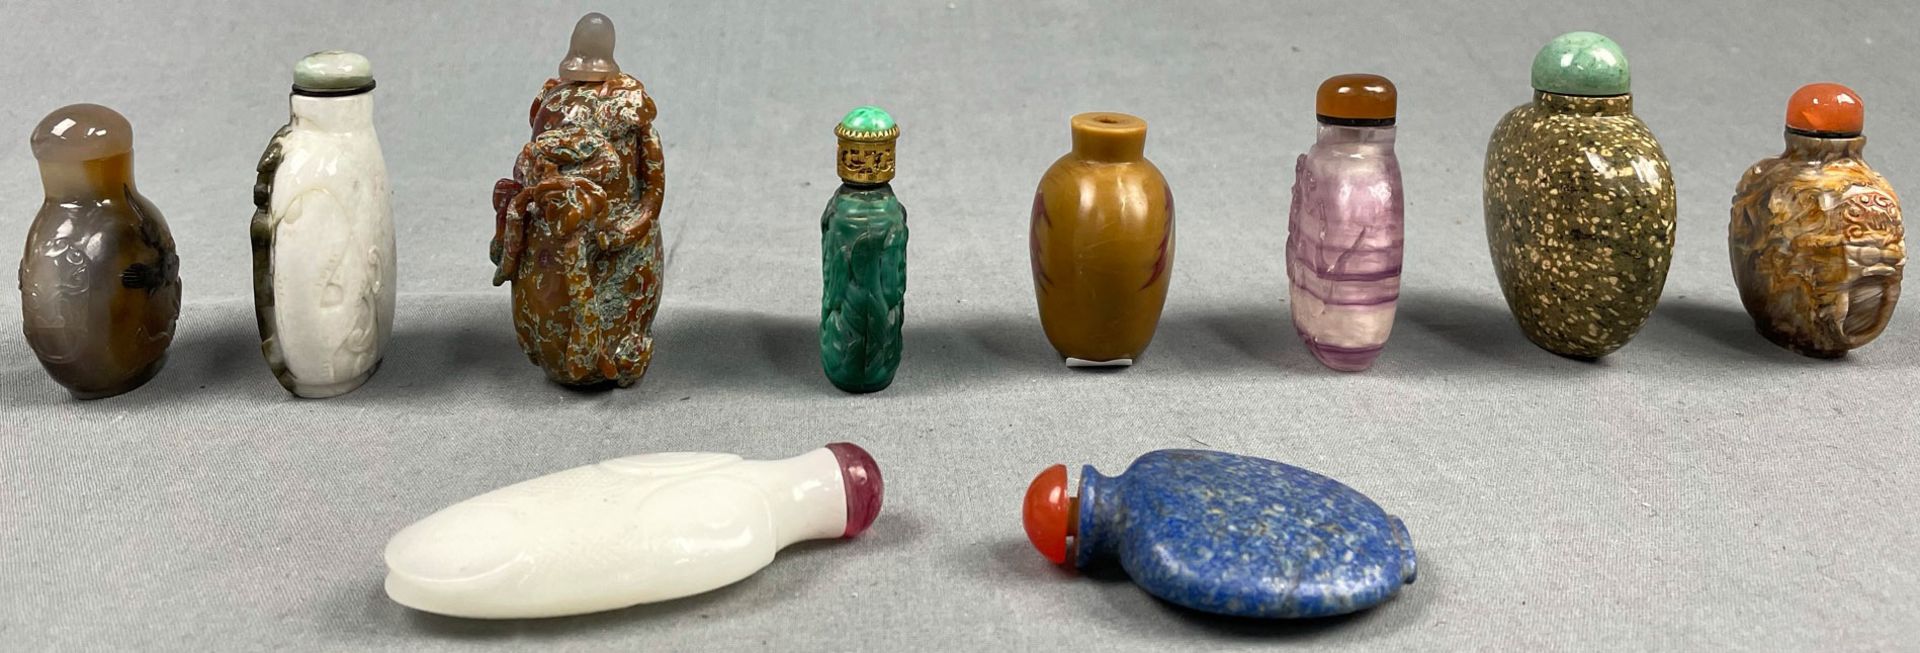 10 feine Snuff Bottles. Wohl China, Japan antik. - Image 2 of 9